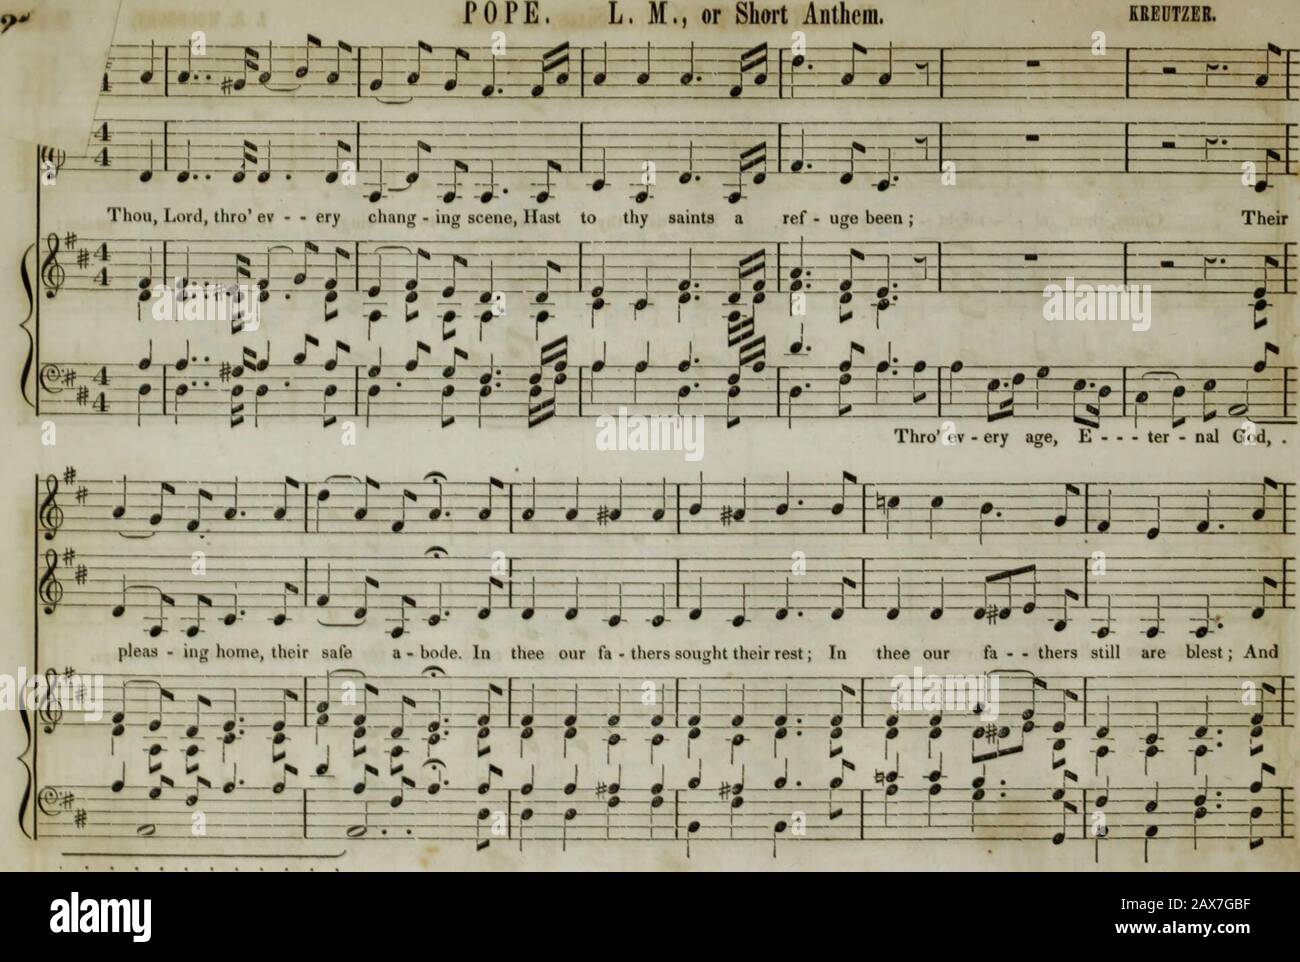 Colección de música de iglesia de la Boston Musical Education Society : compuesta por canciones originales de salmo e himno, piezas selectas, cantos, &c.; incluyendo composiciones adaptadas al servicio de la Iglesia Episcopal Protestante . 63 • HARRINGTON, Sixes & Fours. I b. Woodbury. 22s&GT; h-i—r-f—?- 9 # * ¥—— 1 ! 1 1 f L | 1. ! 1—1 Lj 1 1— - F 1 U 4 1 9— r ? j ? * J—J— Ven, tú al - - poder - - - ; r Rey, Ayúdanos tu nombre a EsfiEEjE cantamos, Ayúdanos a 1 11 11 alabanza; j- j. -i &—8 f—1»—-i ARM 2 J- —& 0— j- j 9 i ——1— Jesús fc=f=H y- r-f j1 1 ? 1 1i 1 Fa • todos los glo - ri - ous, -i—H- Oe Foto de stock